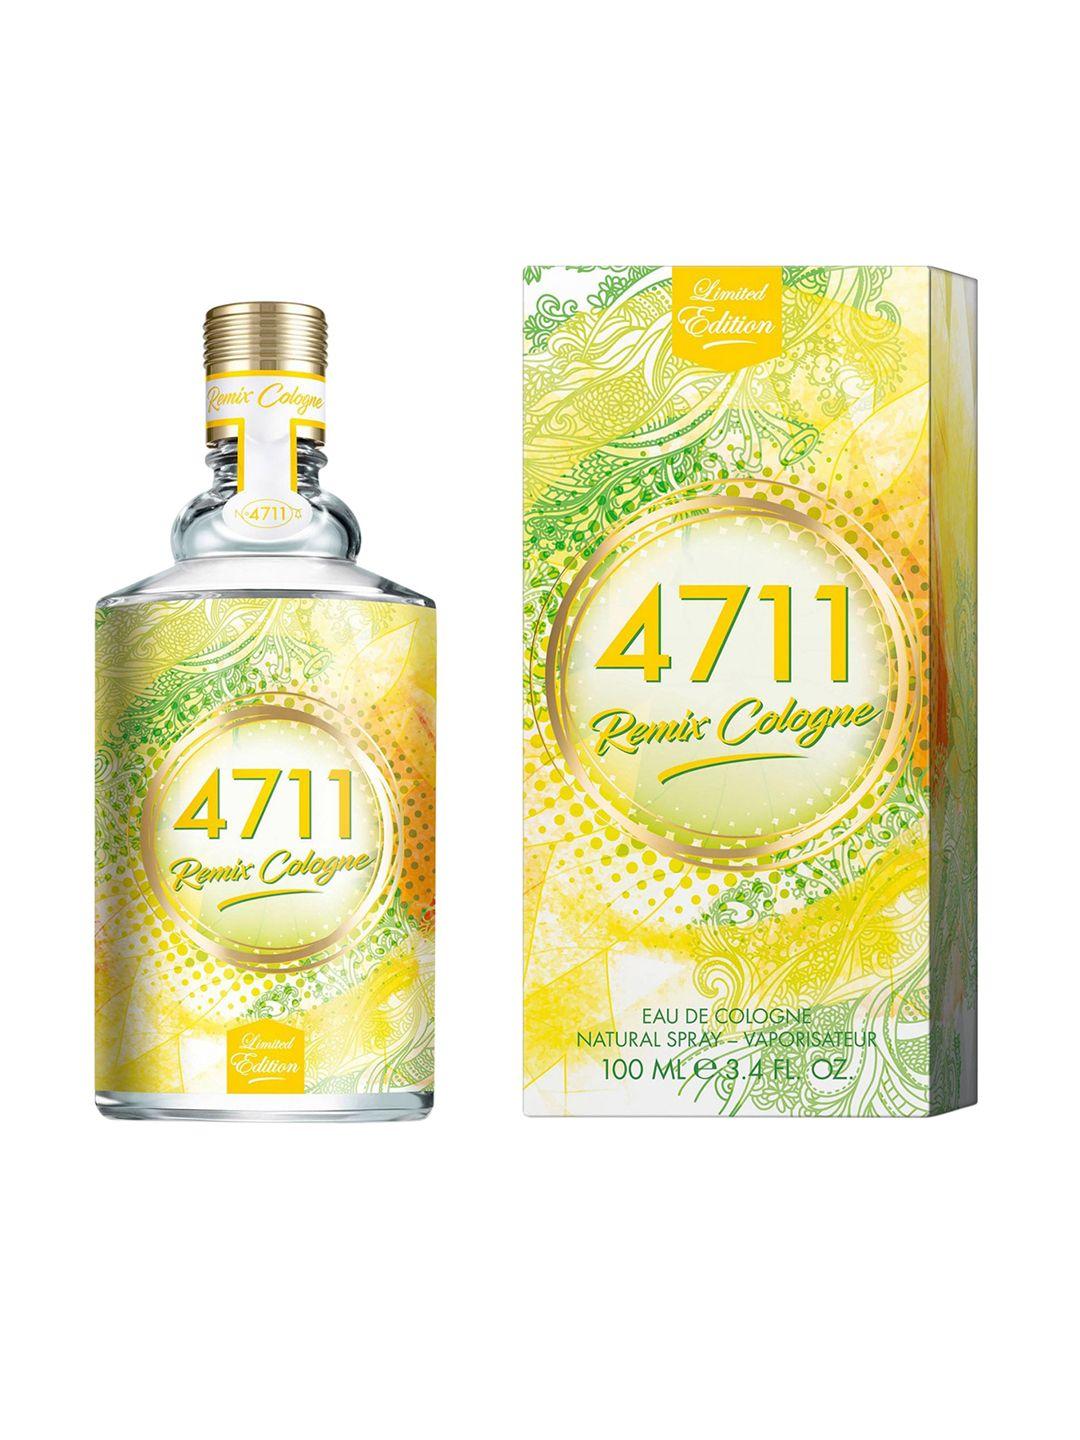 4711 remix cologne lemon eau de cologne - 100ml